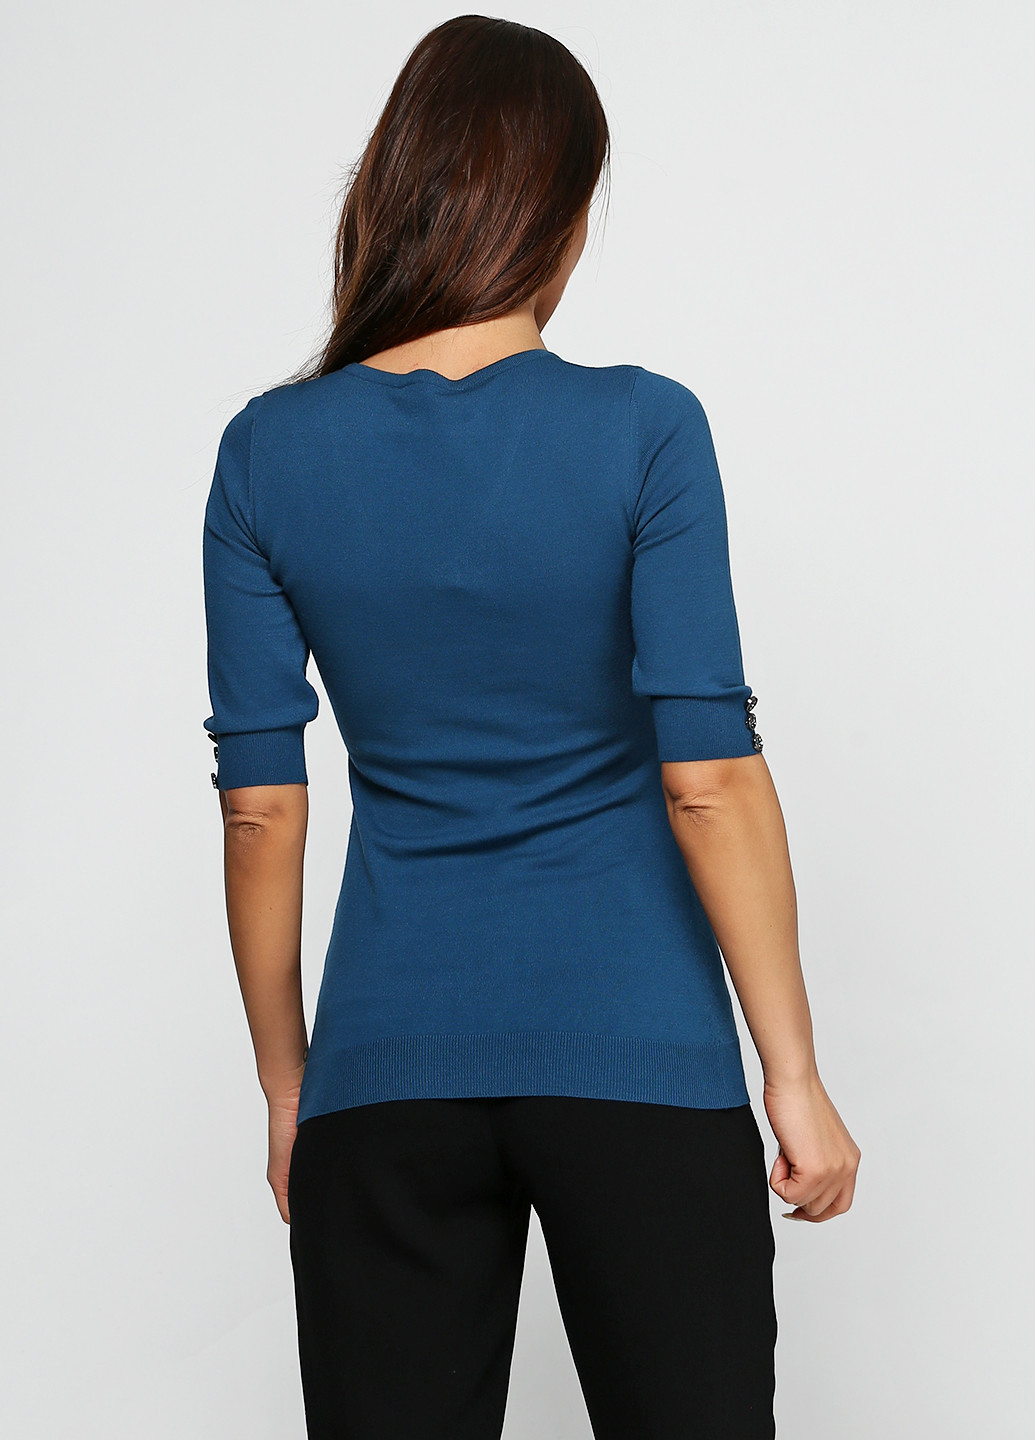 Синий демисезонный пуловер пуловер Sassofono